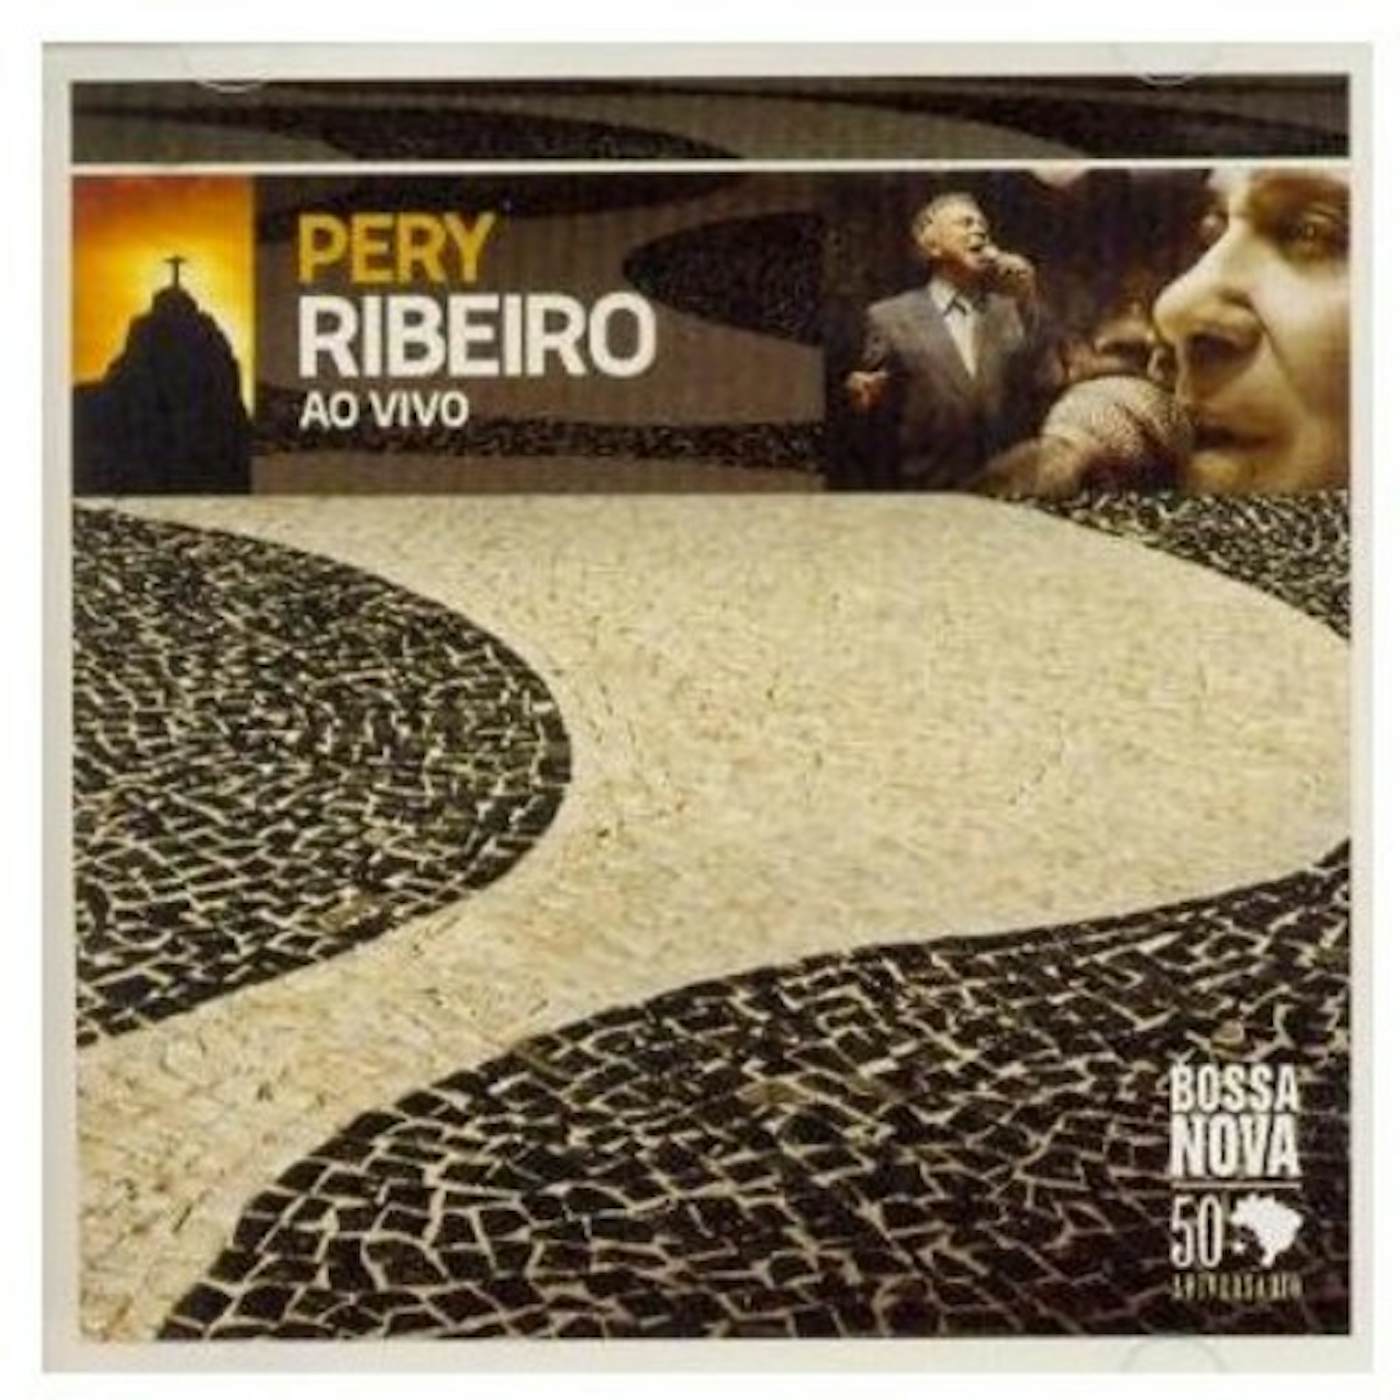 Pery Ribeiro AO VIVO CD